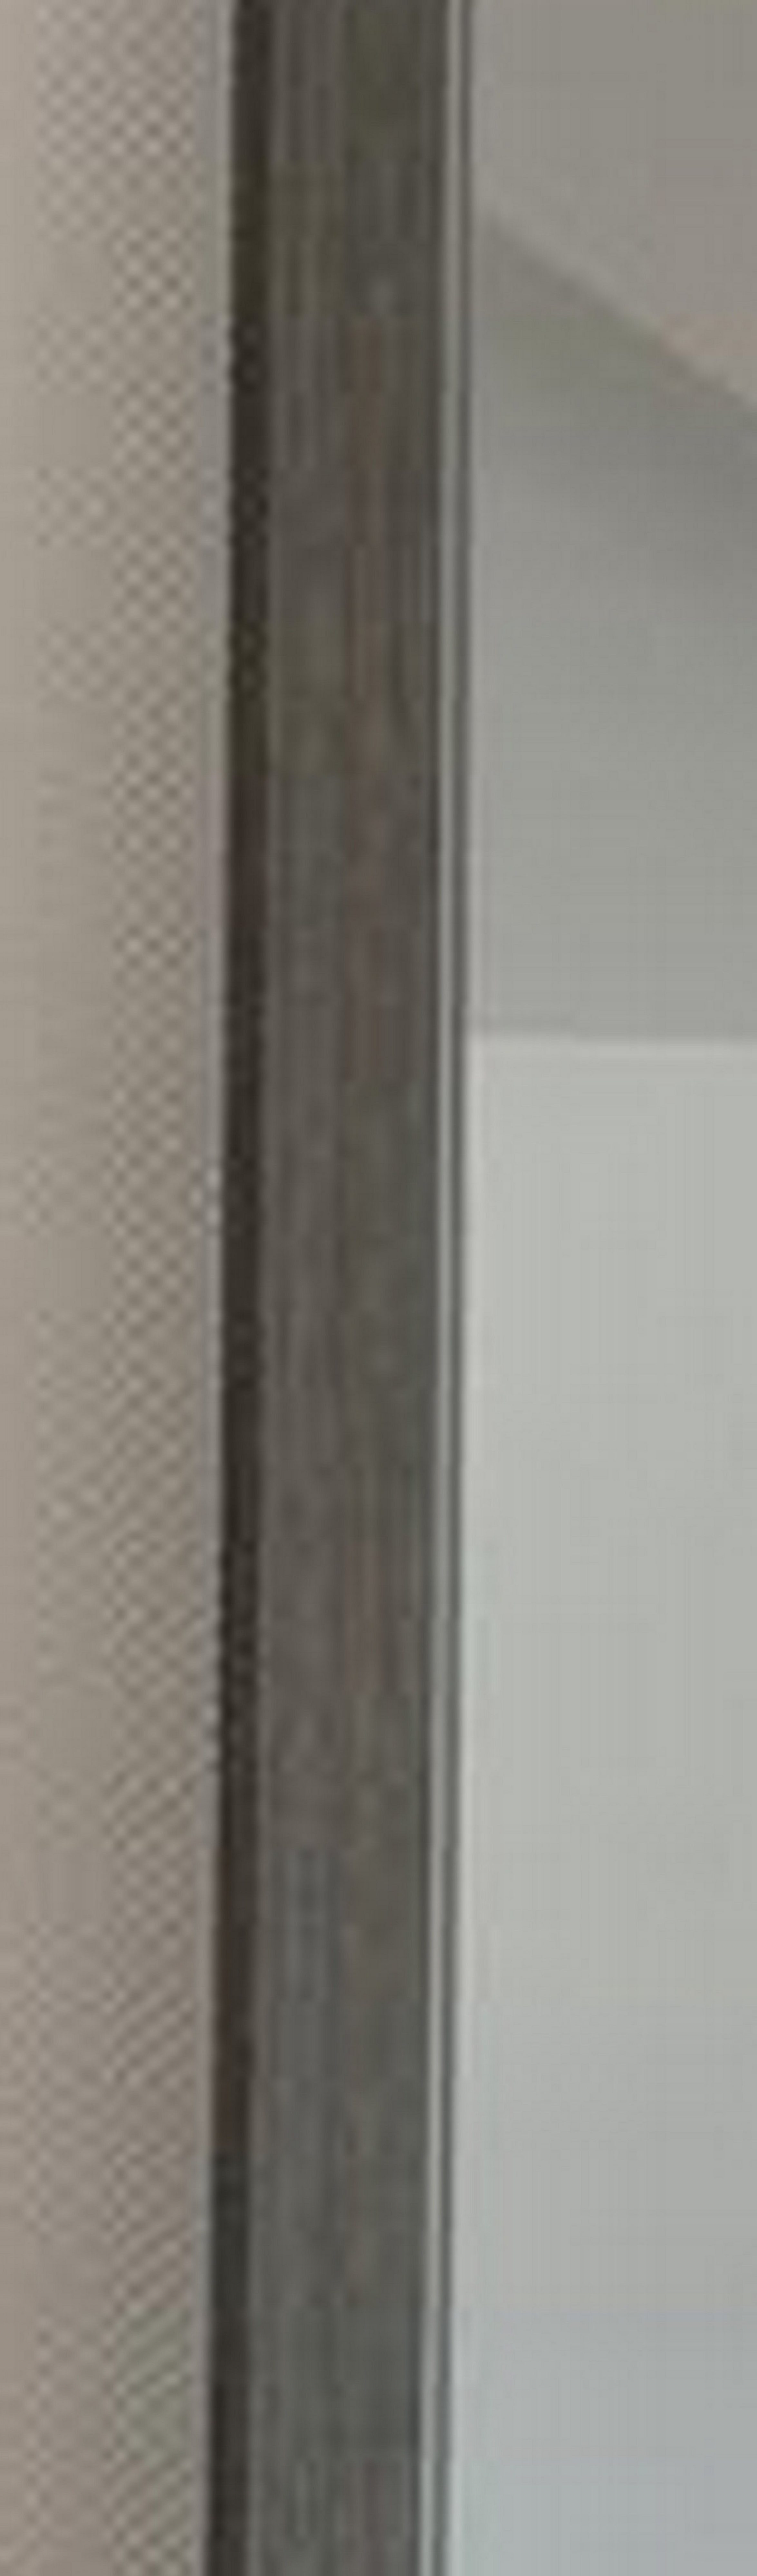 Deko-Werk Ganzkörperspiegel/Spiegel/Wandspiegel Wandspiegel Grau Holz Glas 24 Your-Homestyle 50x150 Rahmen, mit Zena